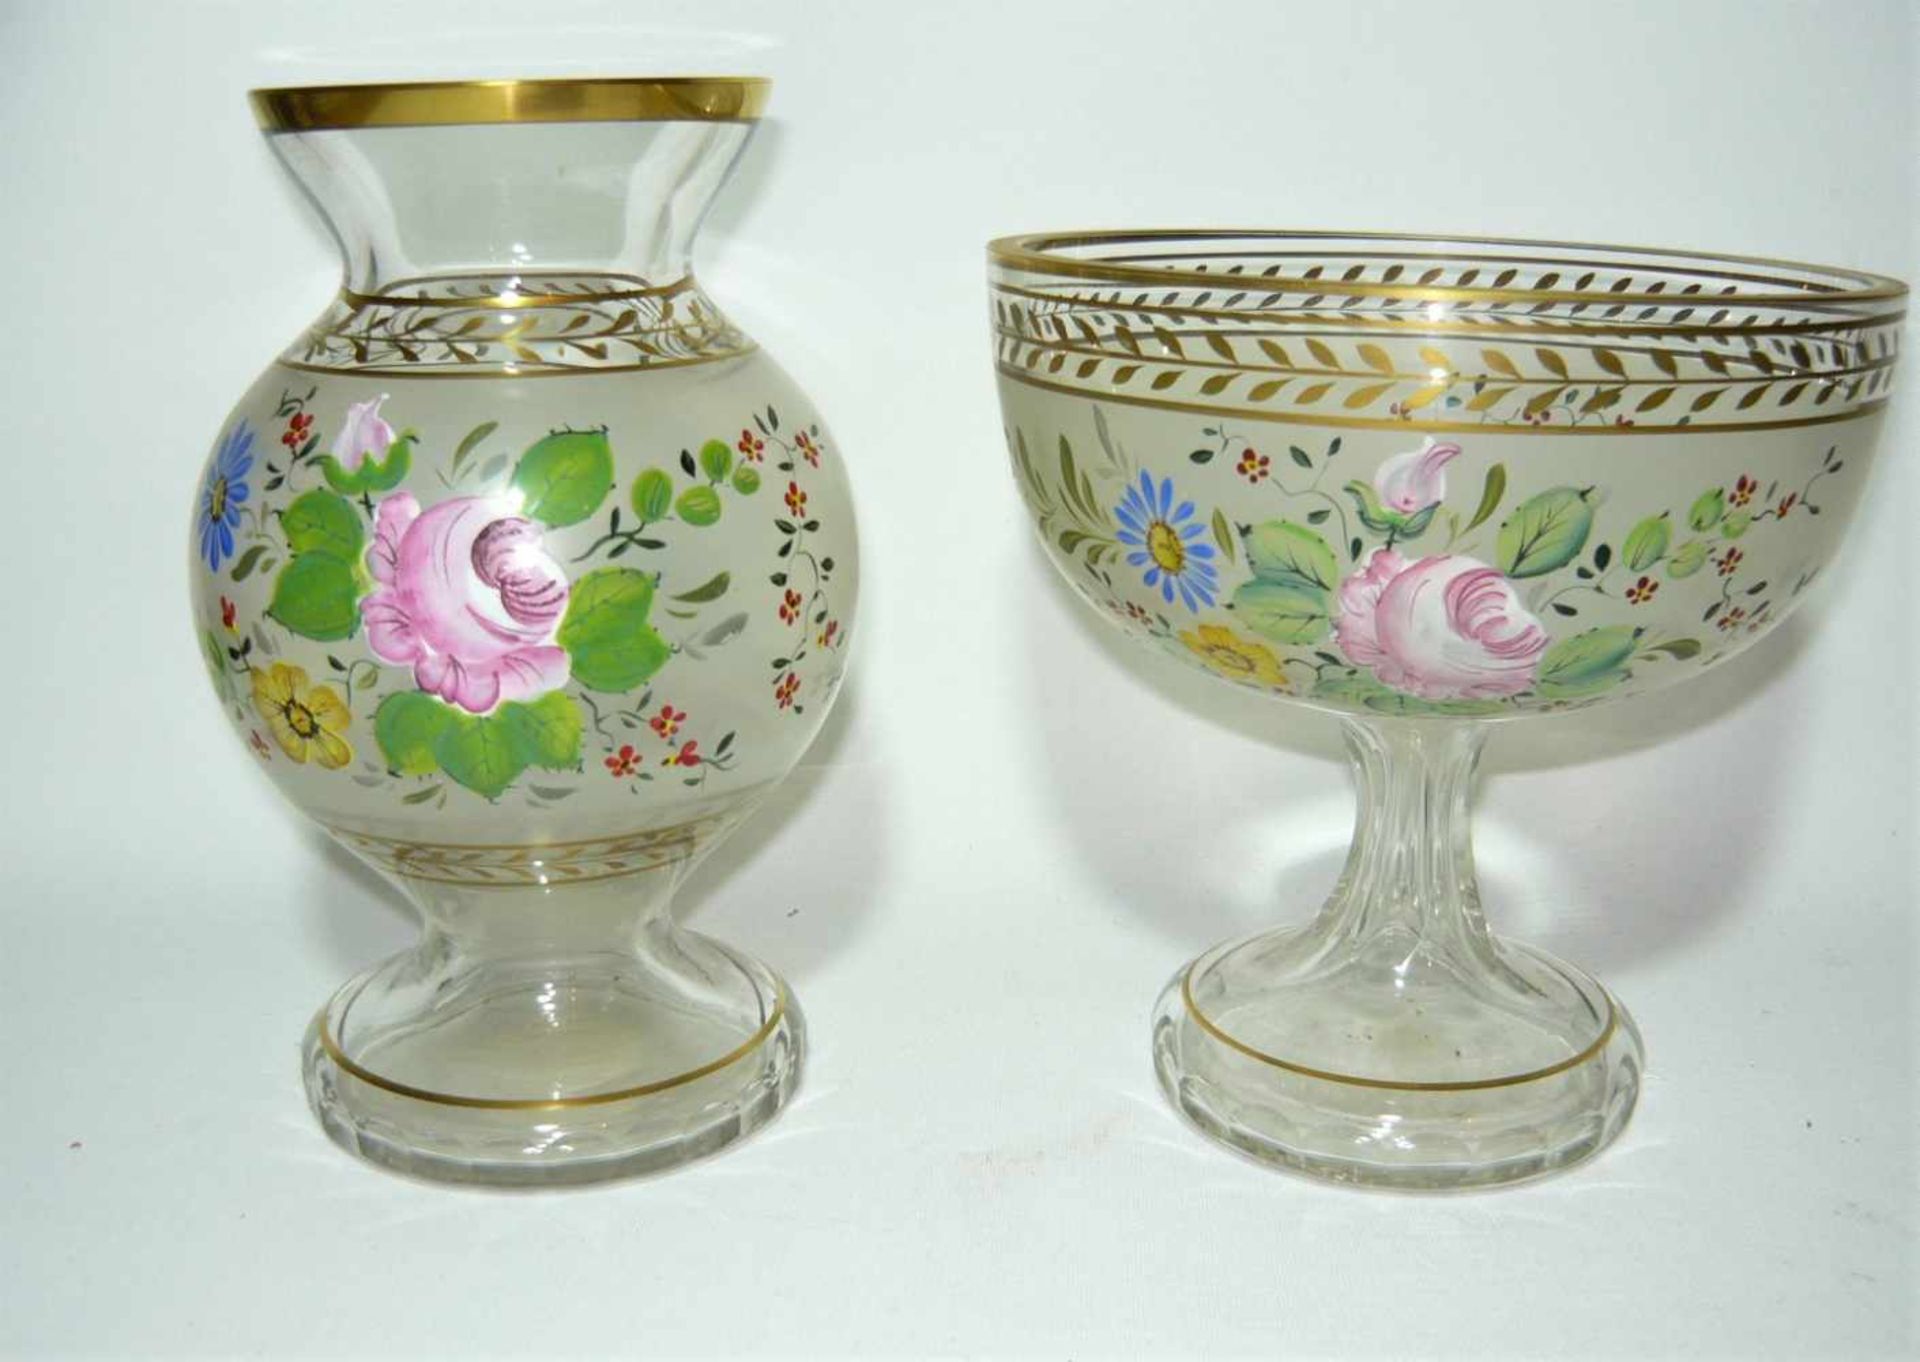 Etagere und Vase. Glas, tlw. Mattiert. Reiche qualitätvolle Blumenmalerei. Um oder nach 1900. Ca.